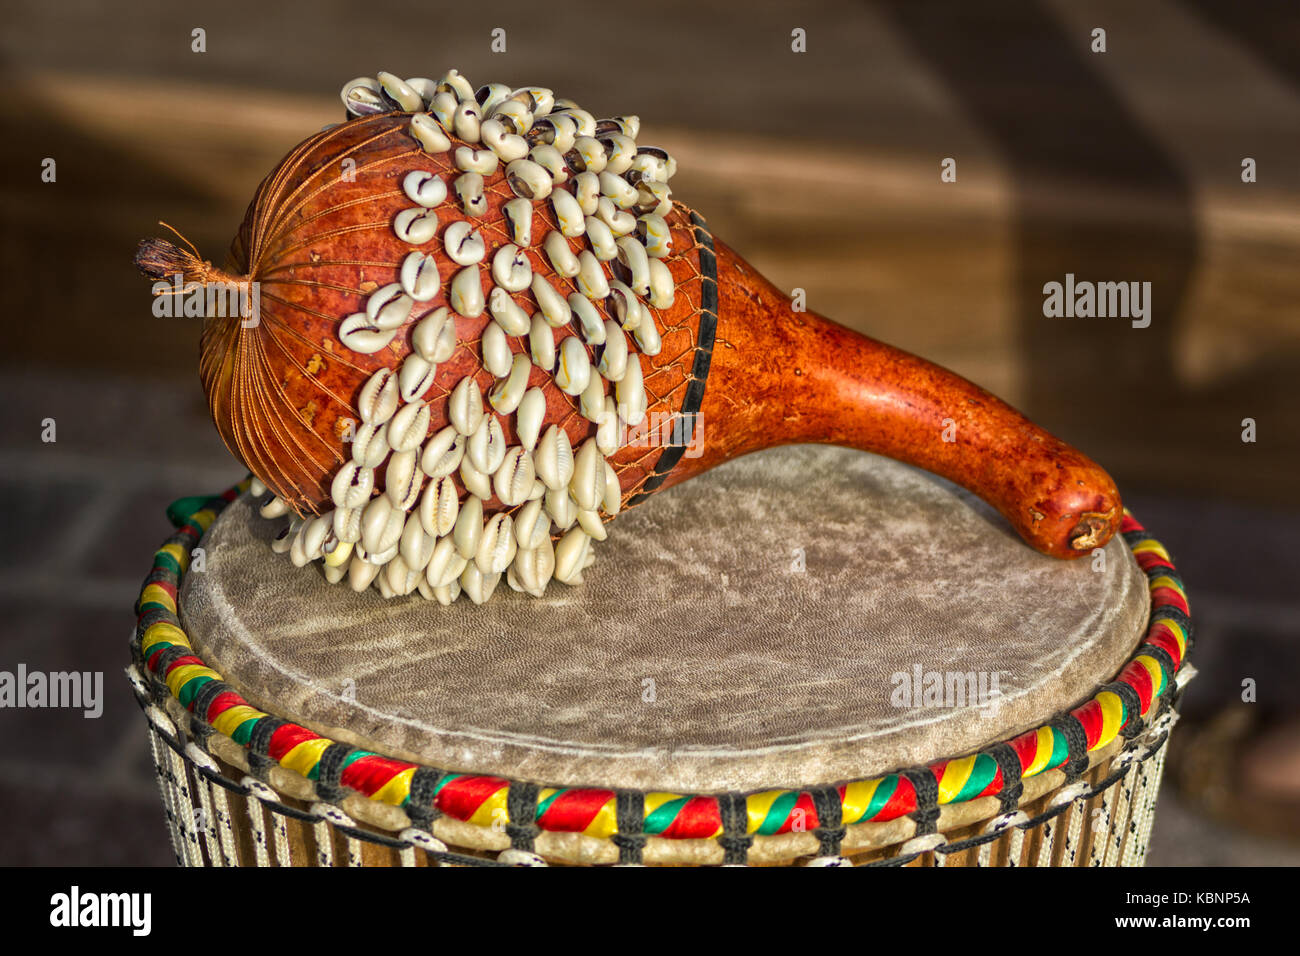 Tambor africano de Ghana SHEKERE (instrumento de percusión africana de Ghana. También conocido como Axatse) aislado con fondo borroso. Foto de stock